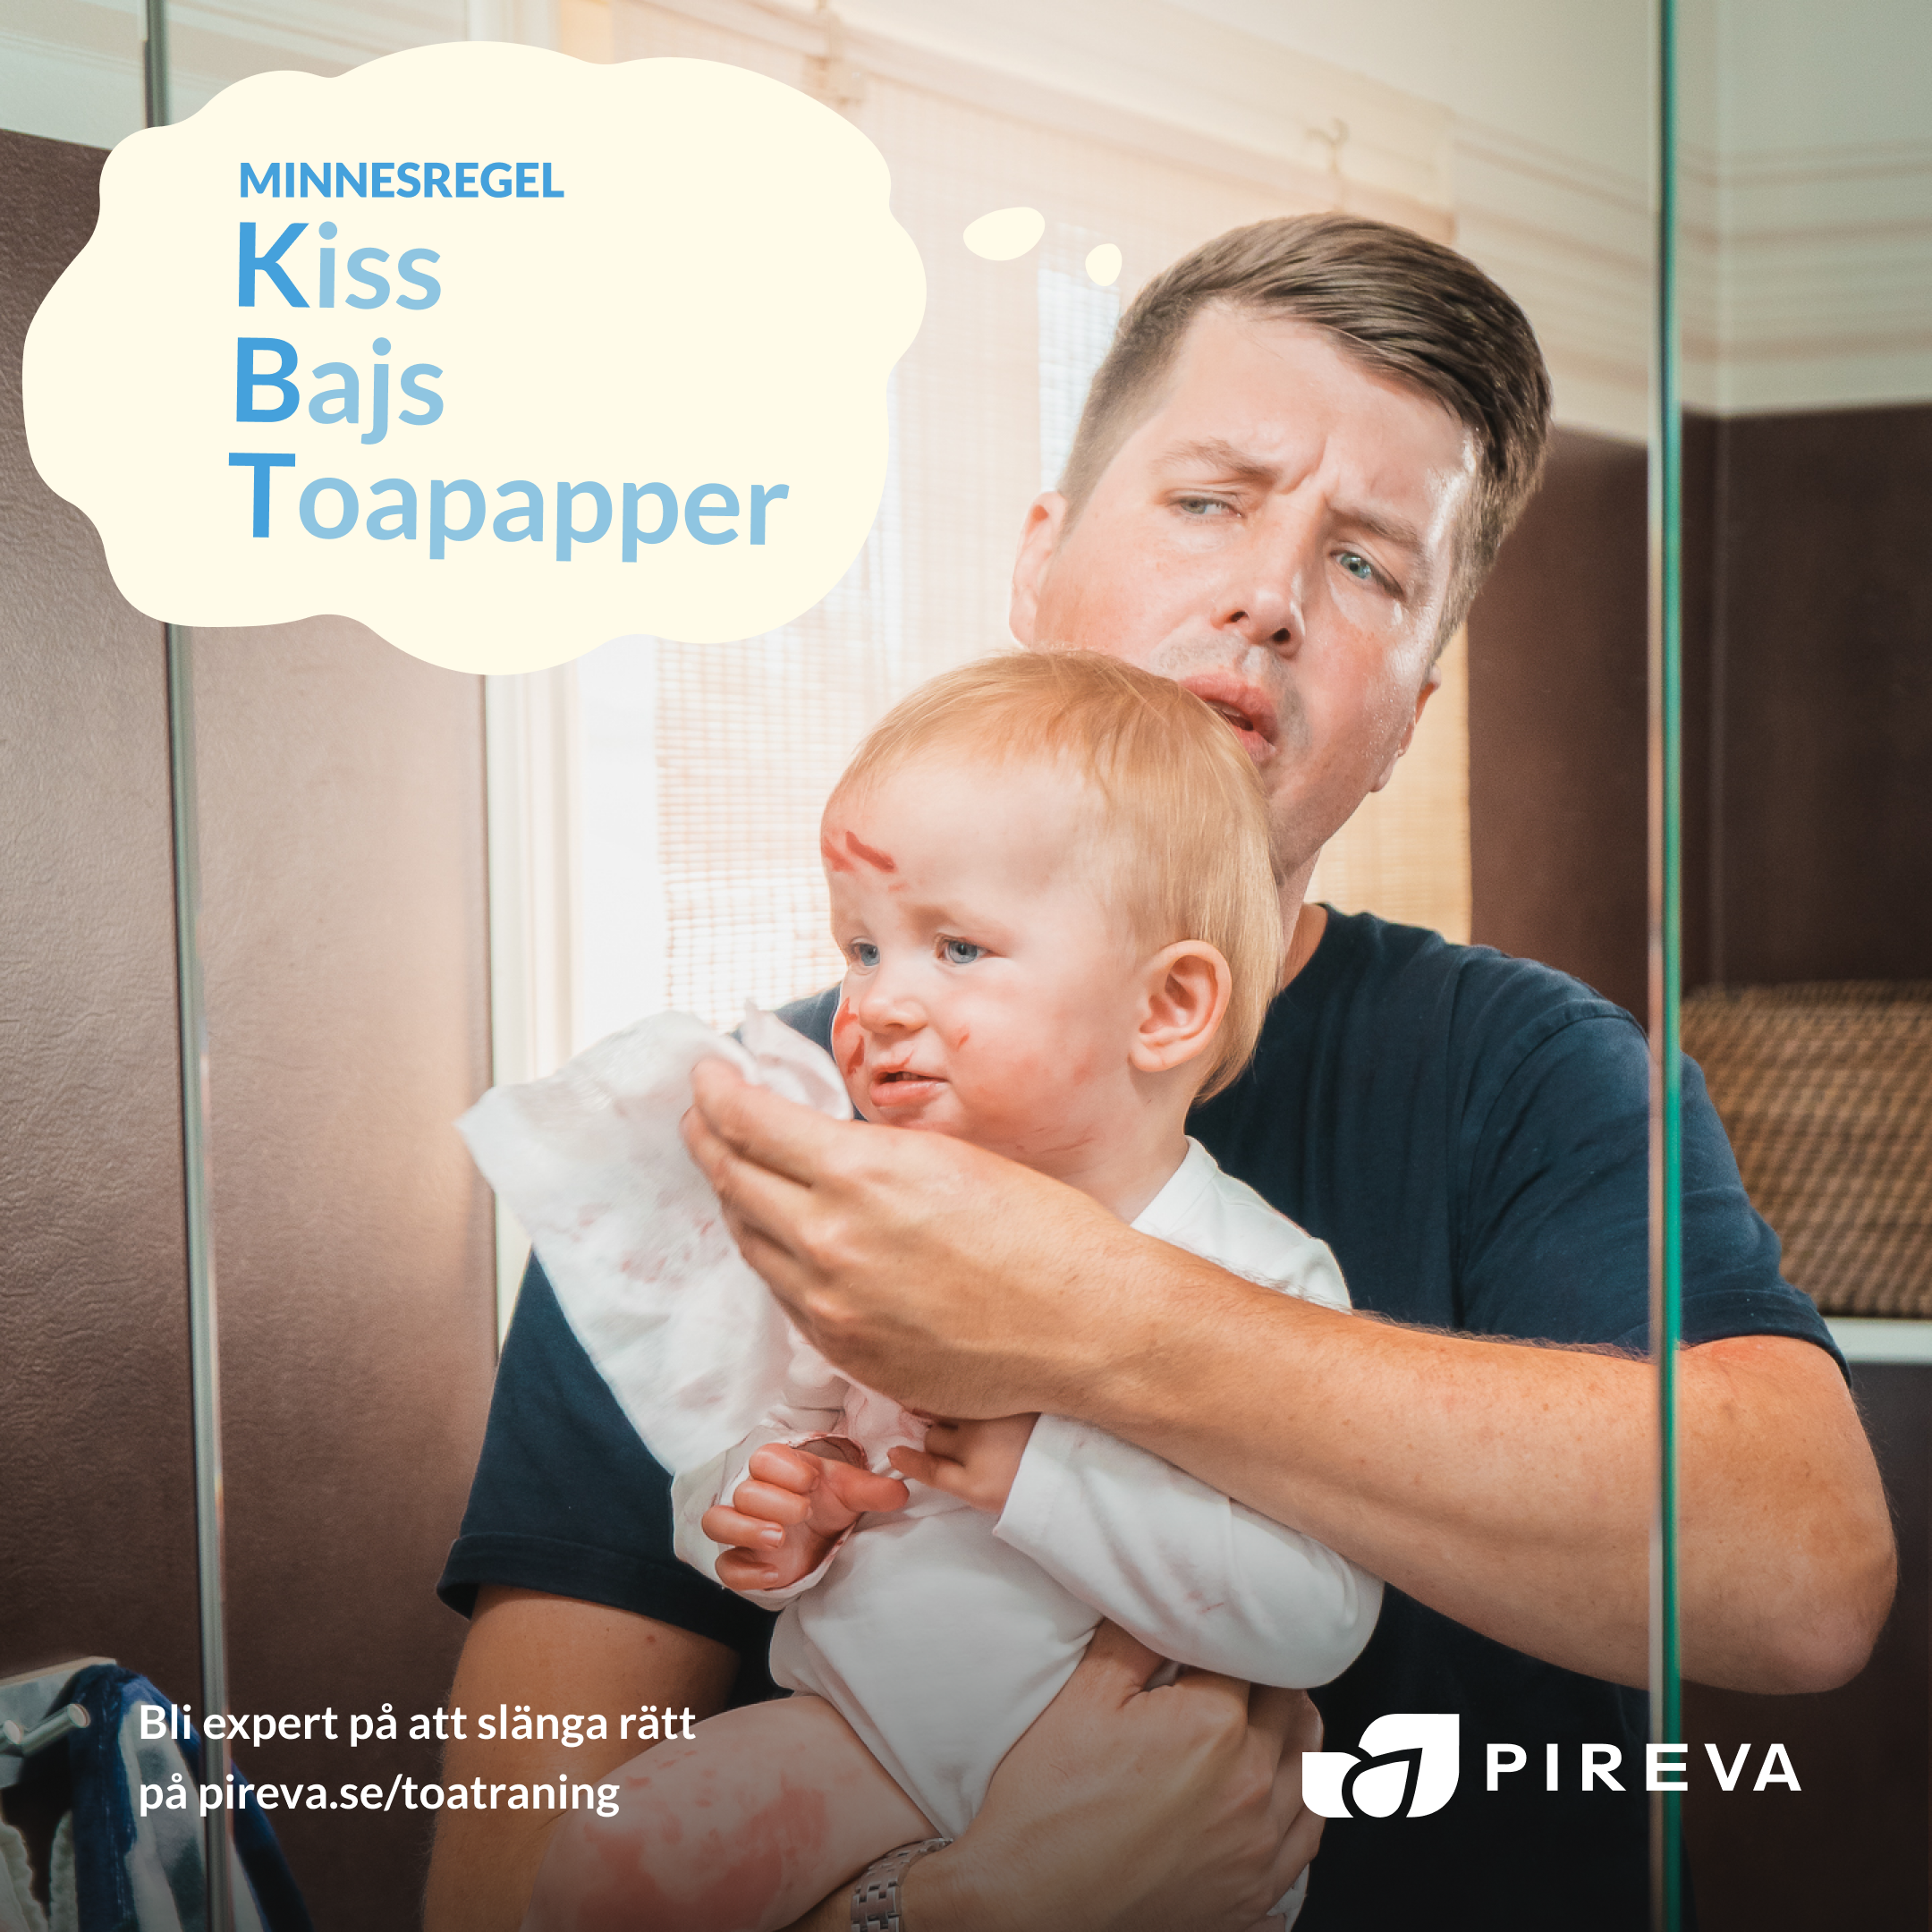 Reklam från Pireva om Toaträning för vuxna. Torka kladdig bebis och pappa tänker minnesregeln KBT: Kiss, Bajs, Toapapper